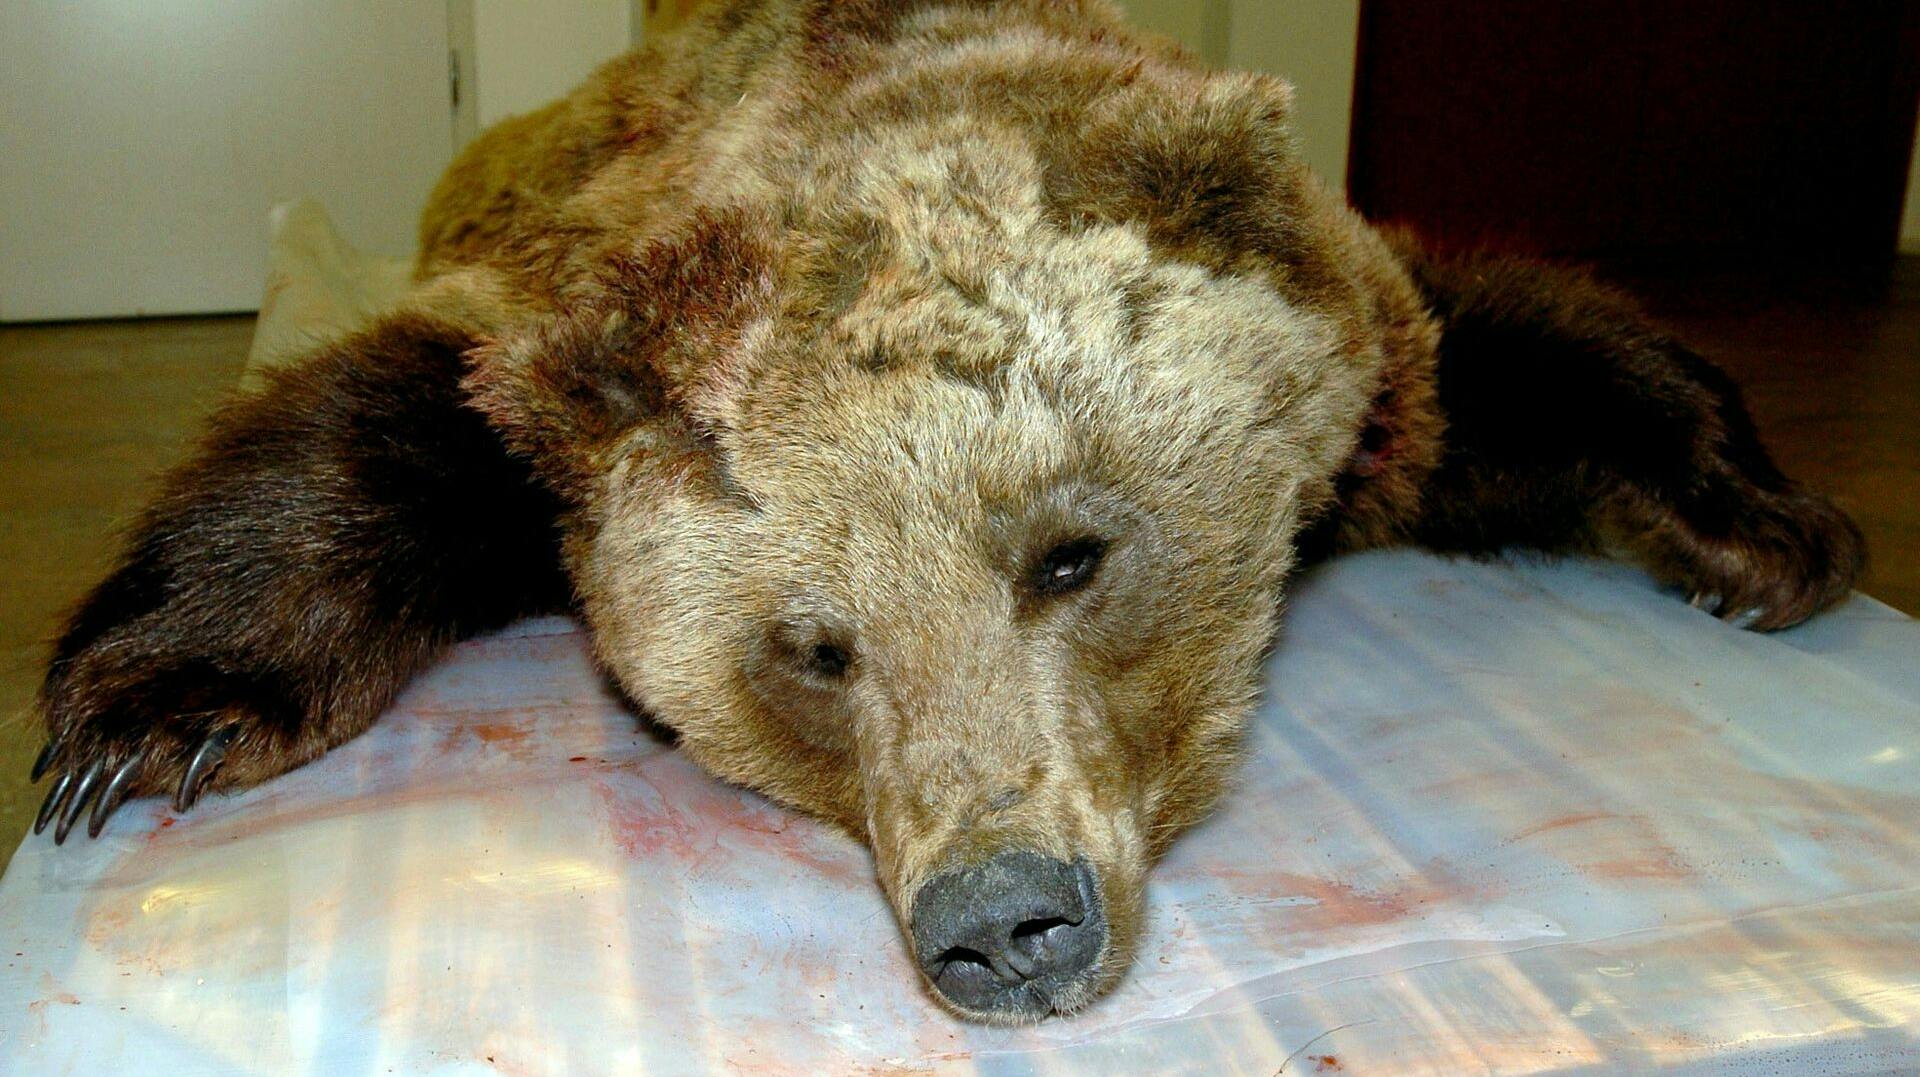 Det er heldigvis meget sjældent, at en bjørn dræber mennesker i Sverige. Men i 2004 skete det. Bjørnen blev dræbt og var den første i dengang 106 år, som havde dræbt et menneske i landet.